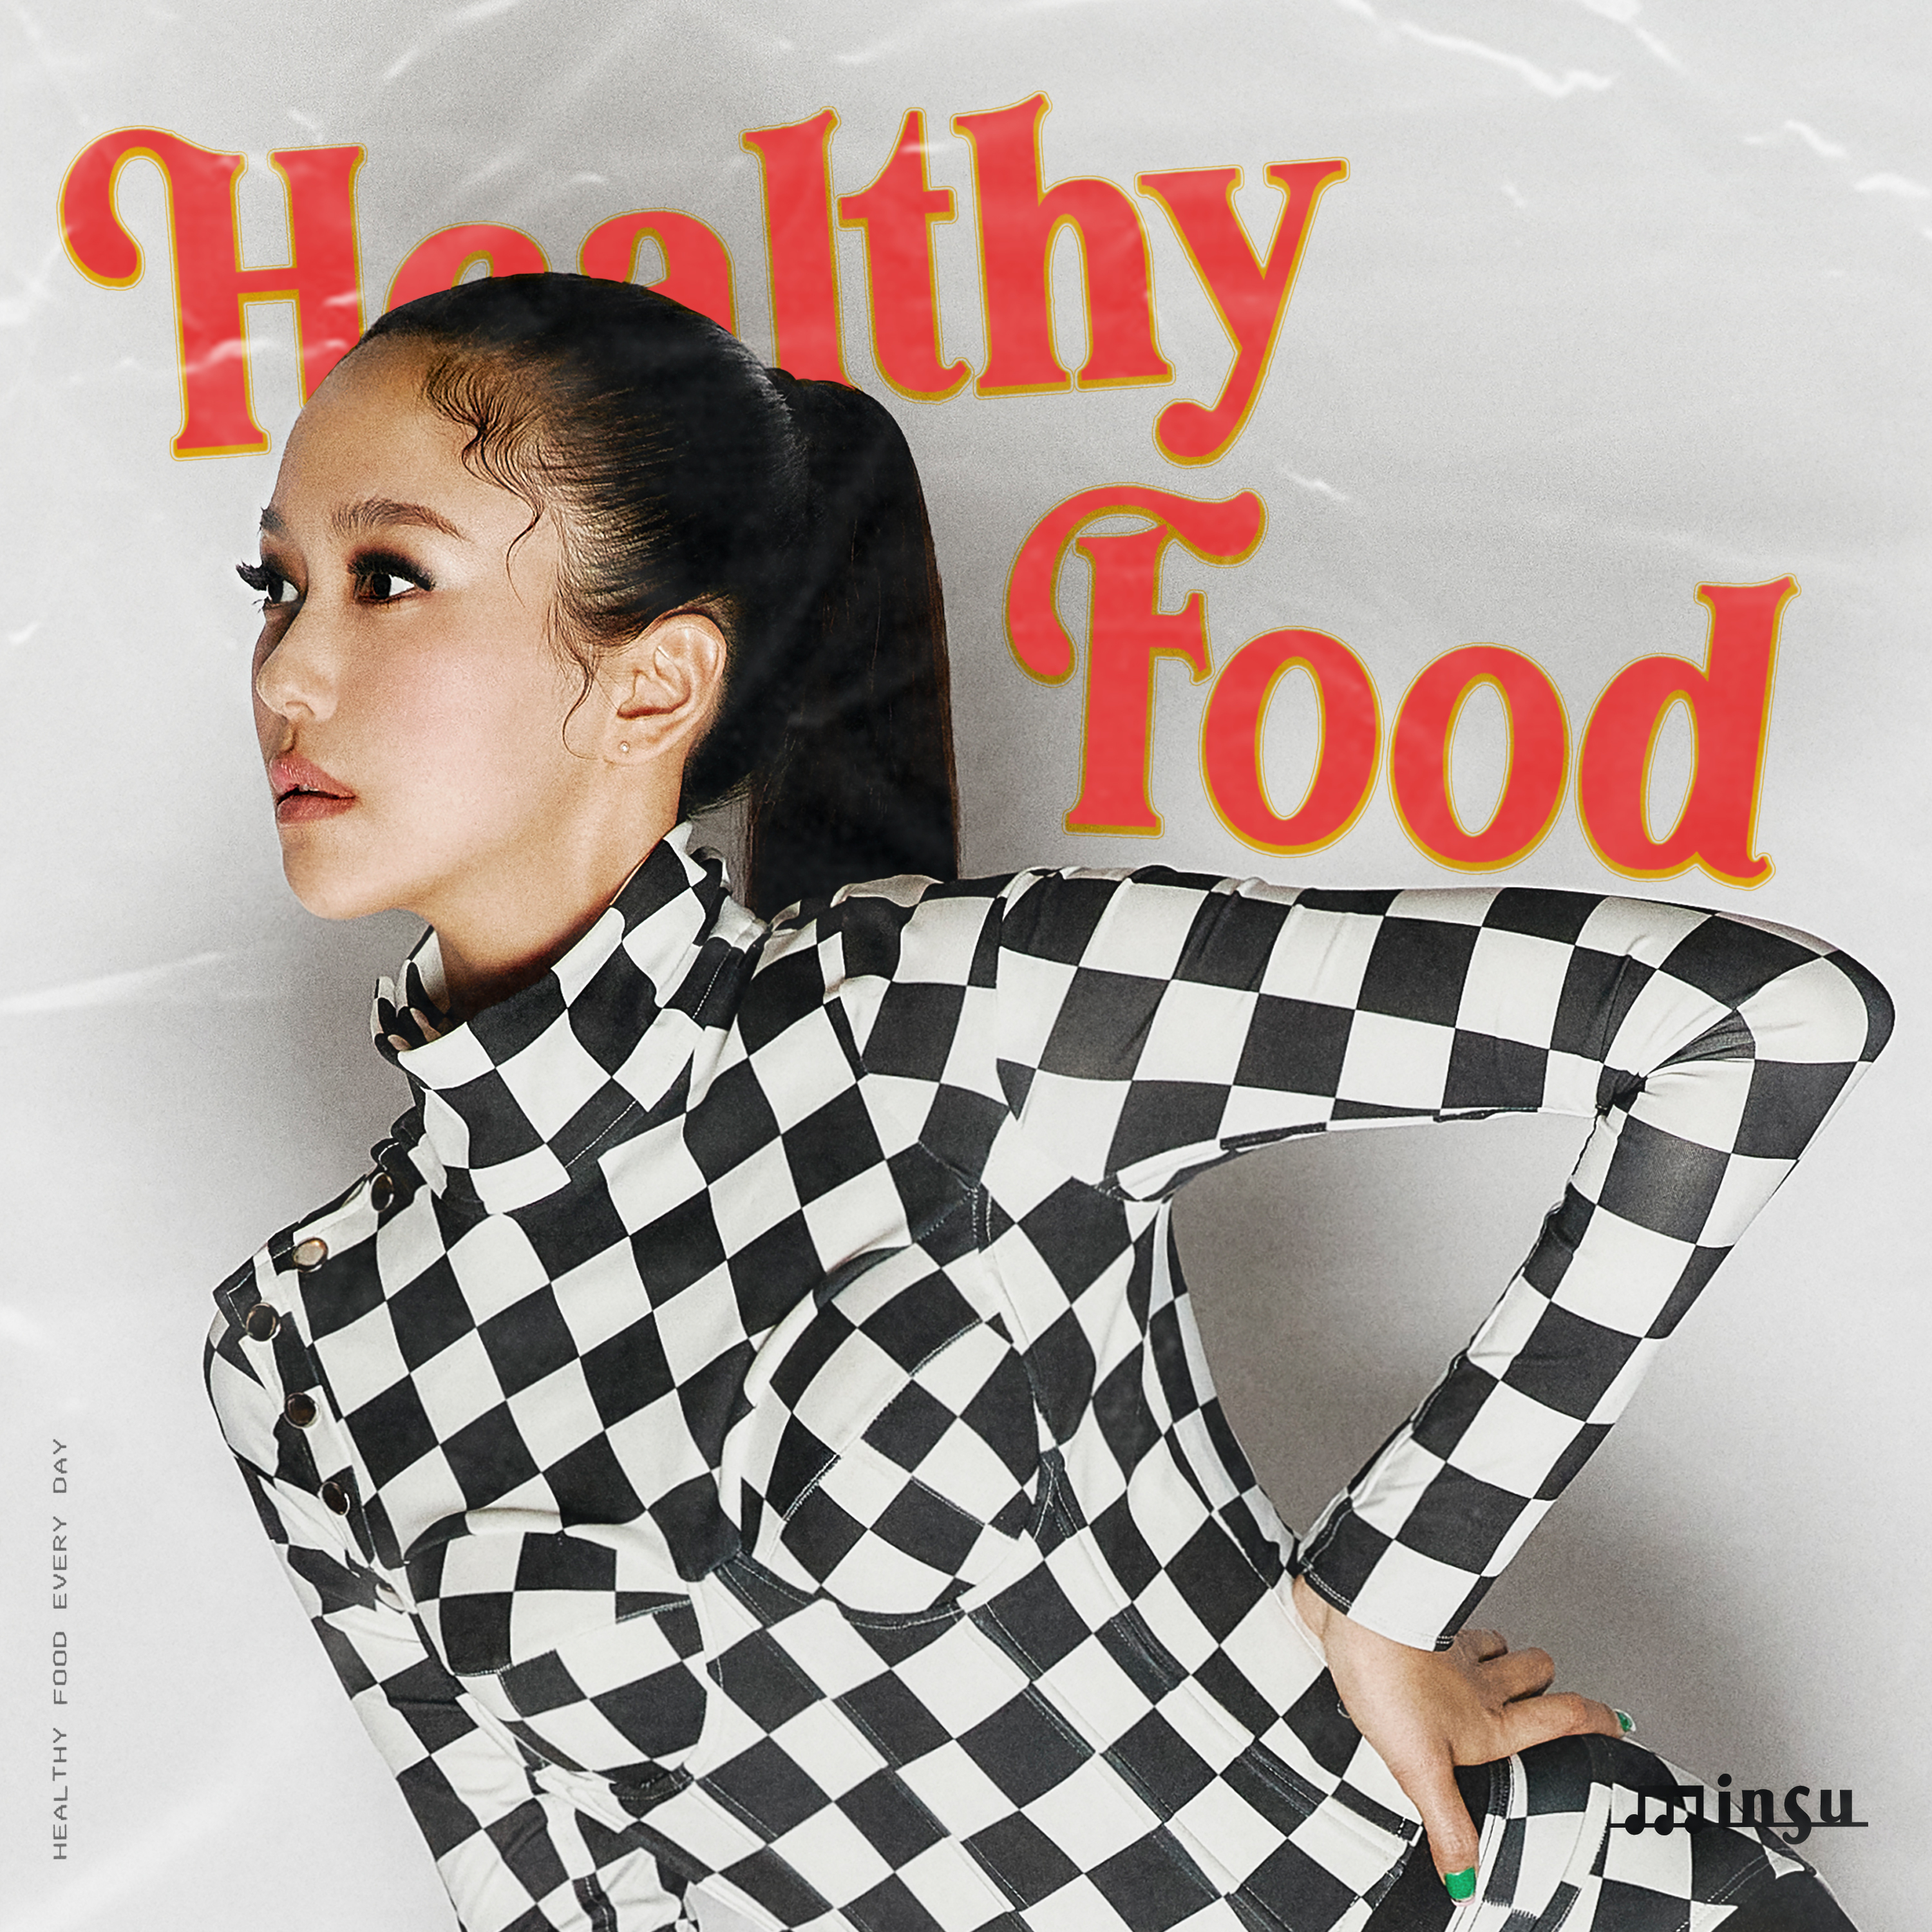 [影音] Minsu - Healthy Food